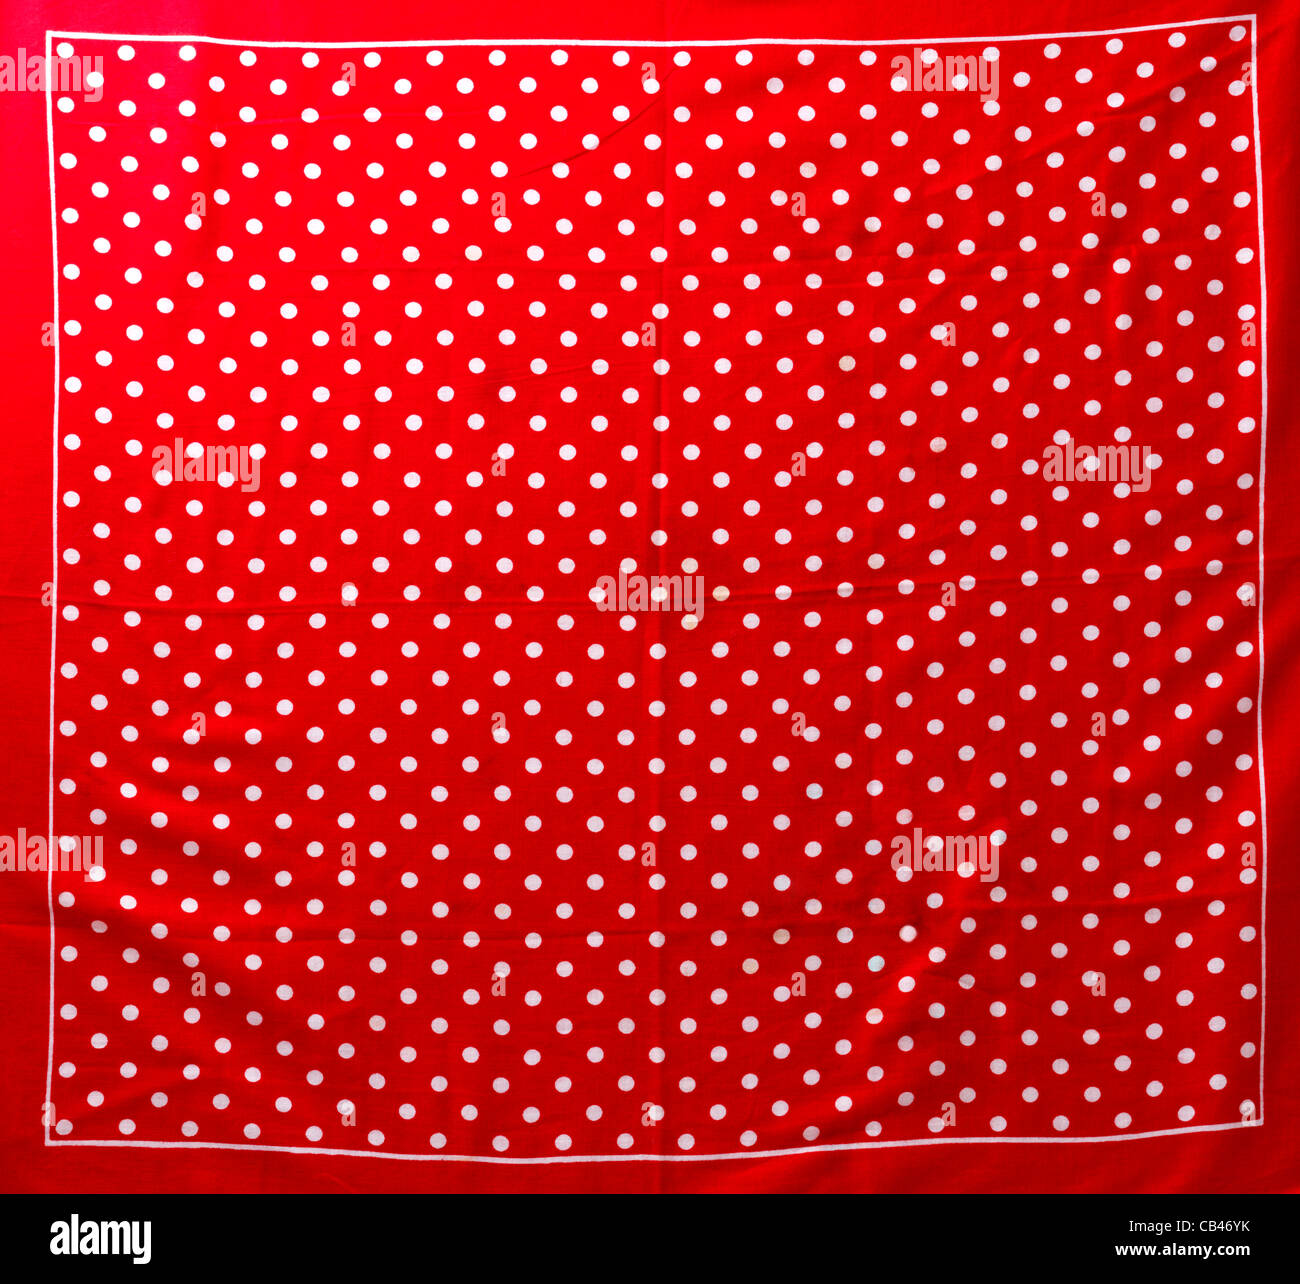 Pañuelo rojo con lunares blancos Fotografía stock Alamy